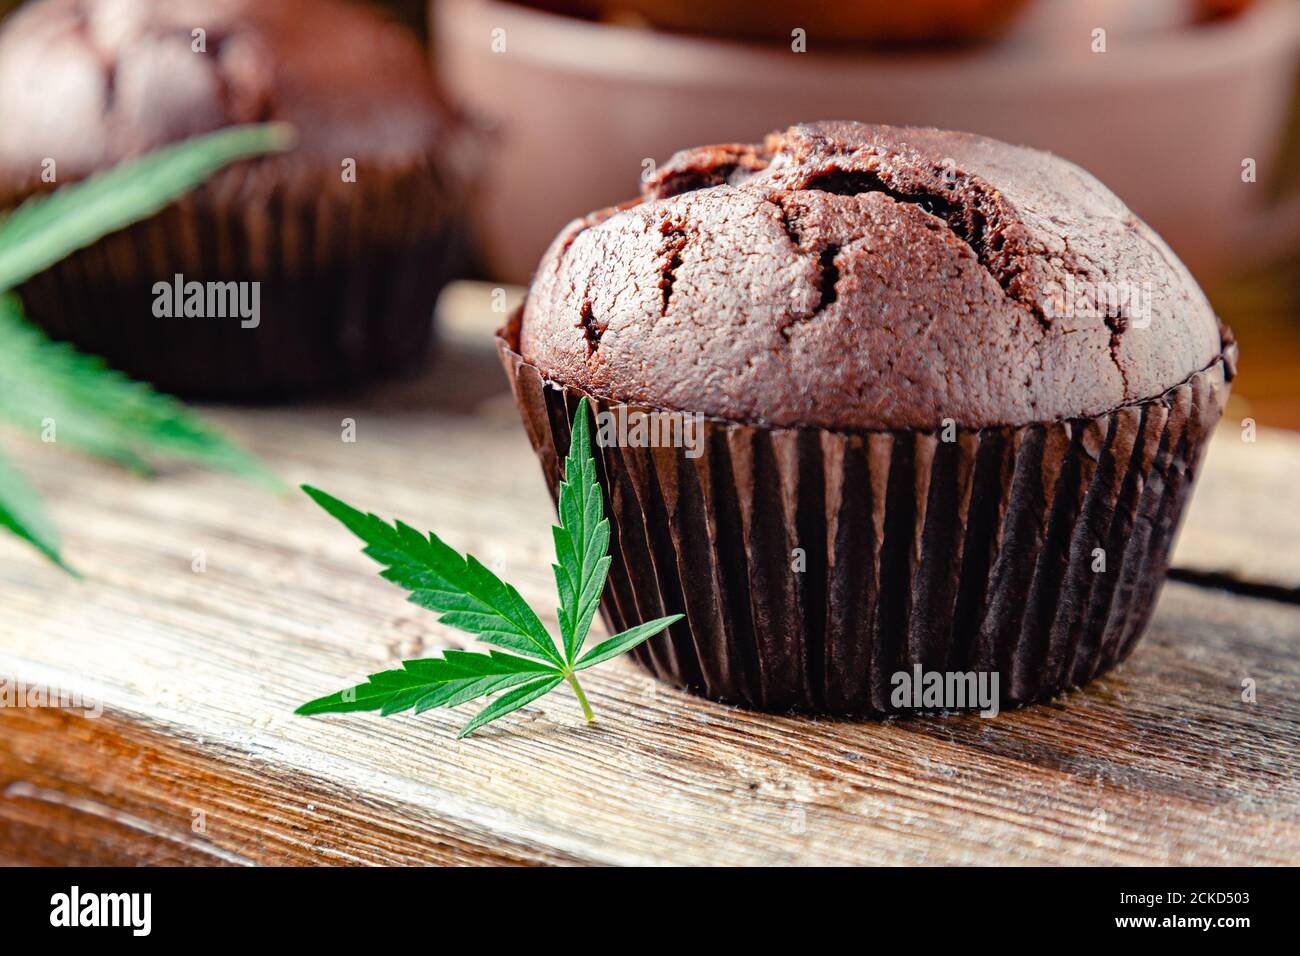 Cupcake mit Marihuana. Schokolade Cupcake Muffins mit Cannabis Unkraut cbd. Medizinische Marihuana-Drogen in Lebensmitteln Dessert, Ganja Legalisierung. Kochen Backen Stockfoto